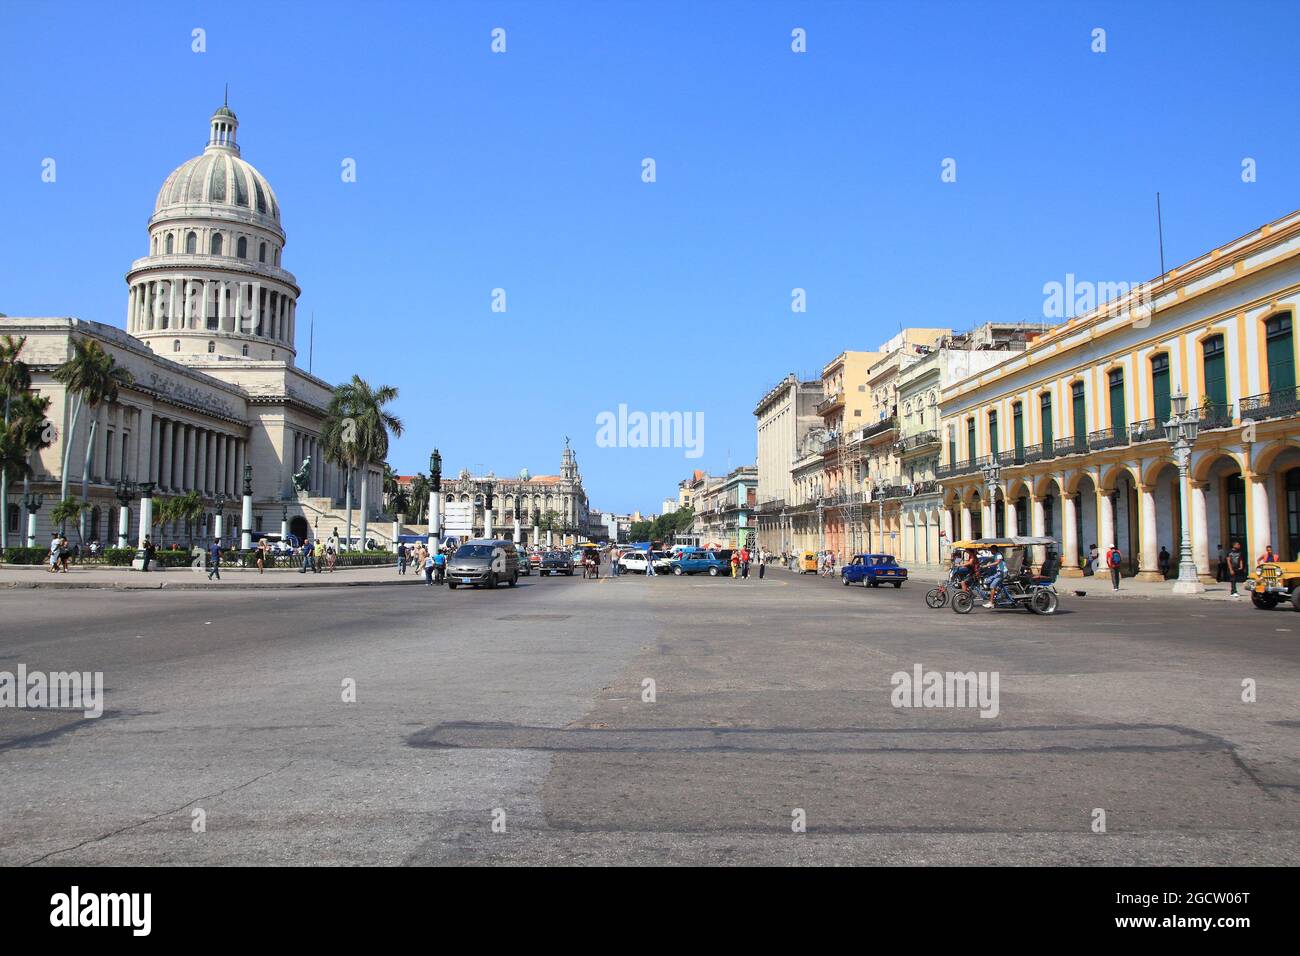 LA HAVANE, CUBA - 26 FÉVRIER 2011 : les gens visitent la rue Paseo de Marti à la Havane, Cuba. Le bâtiment sur la gauche est Capitolio Nacional (Capitole national) Banque D'Images